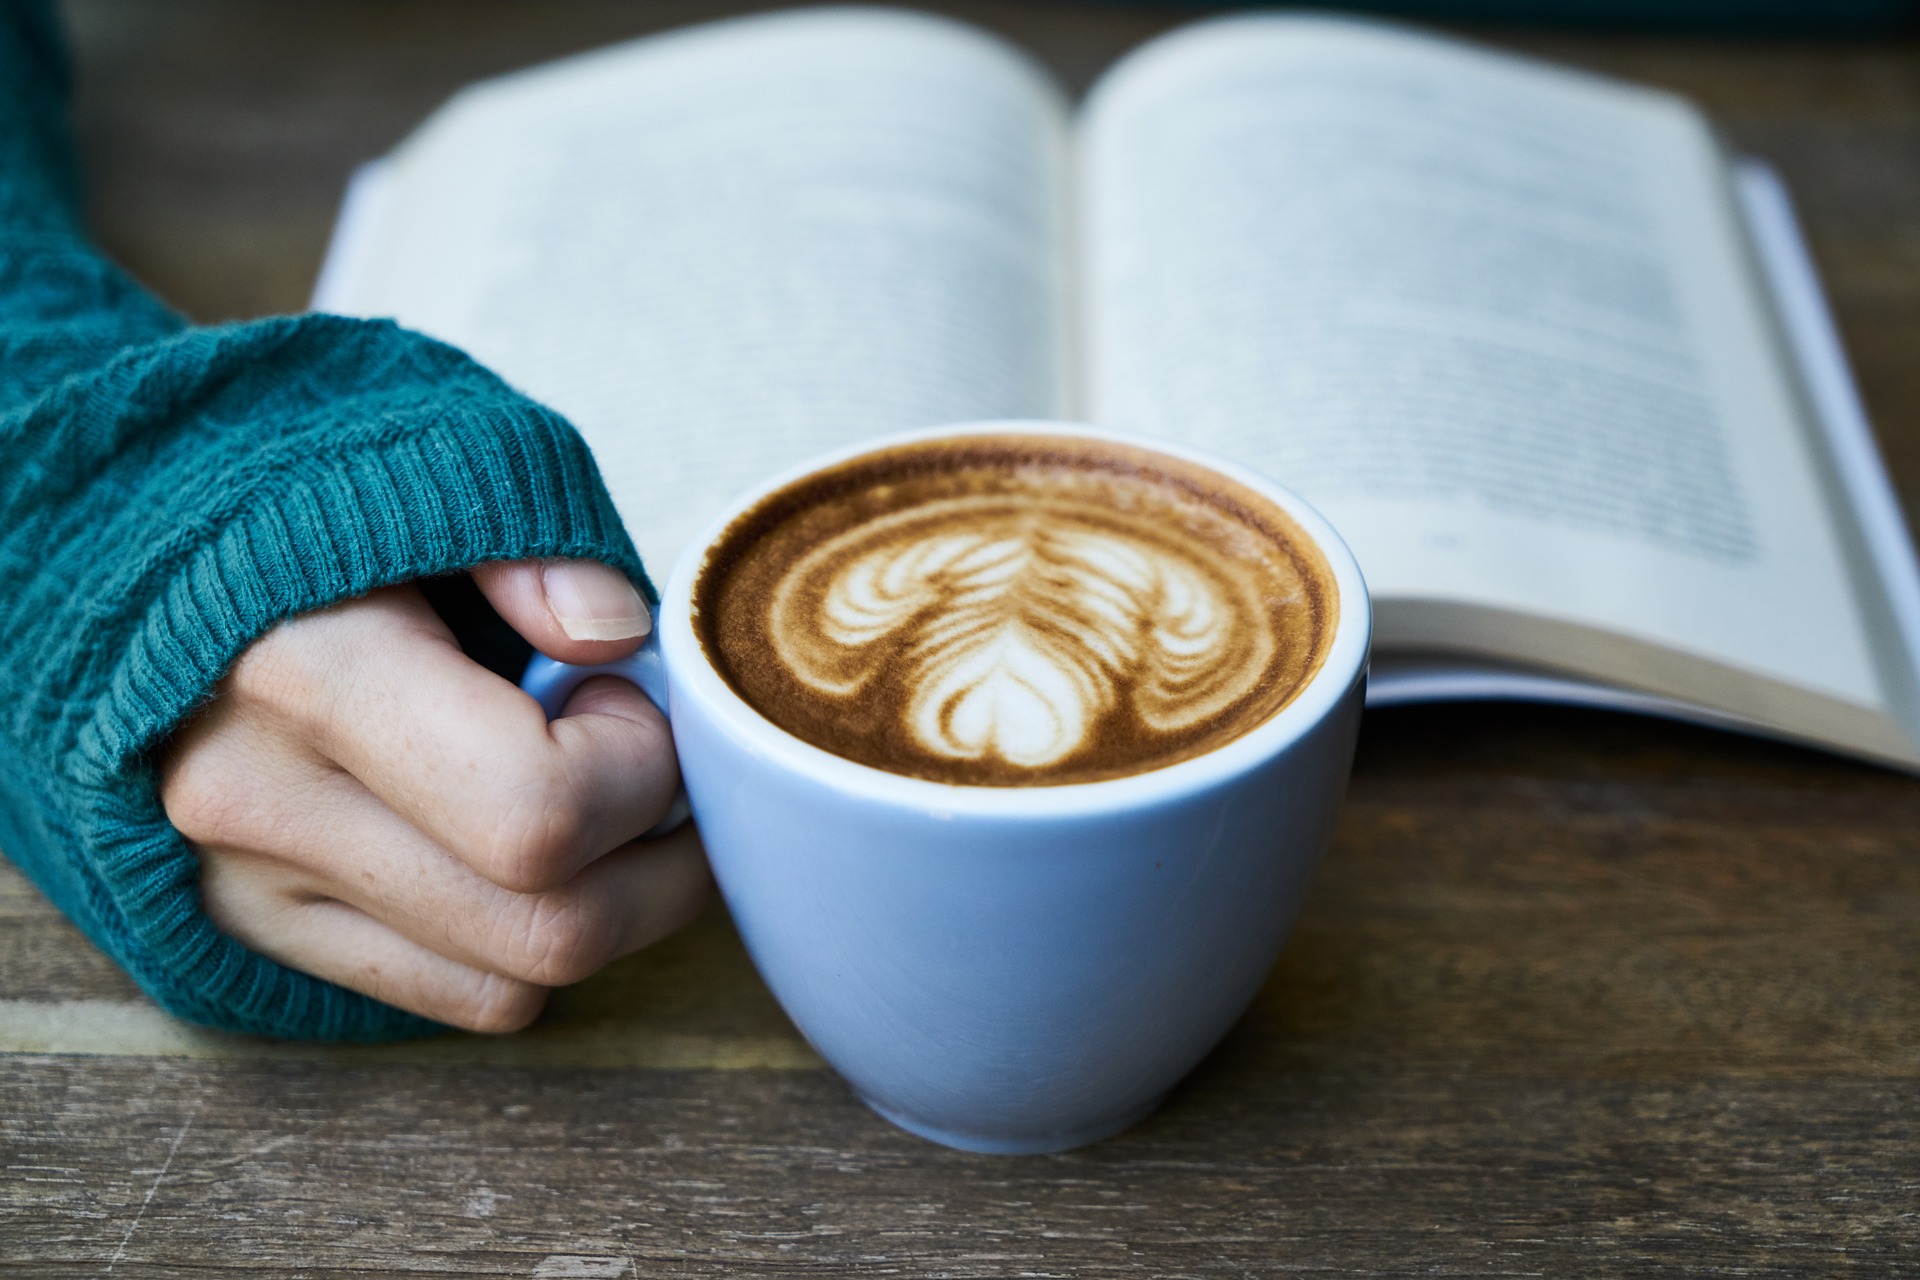 Mano sosteniendo una taza de café delante de un libro.